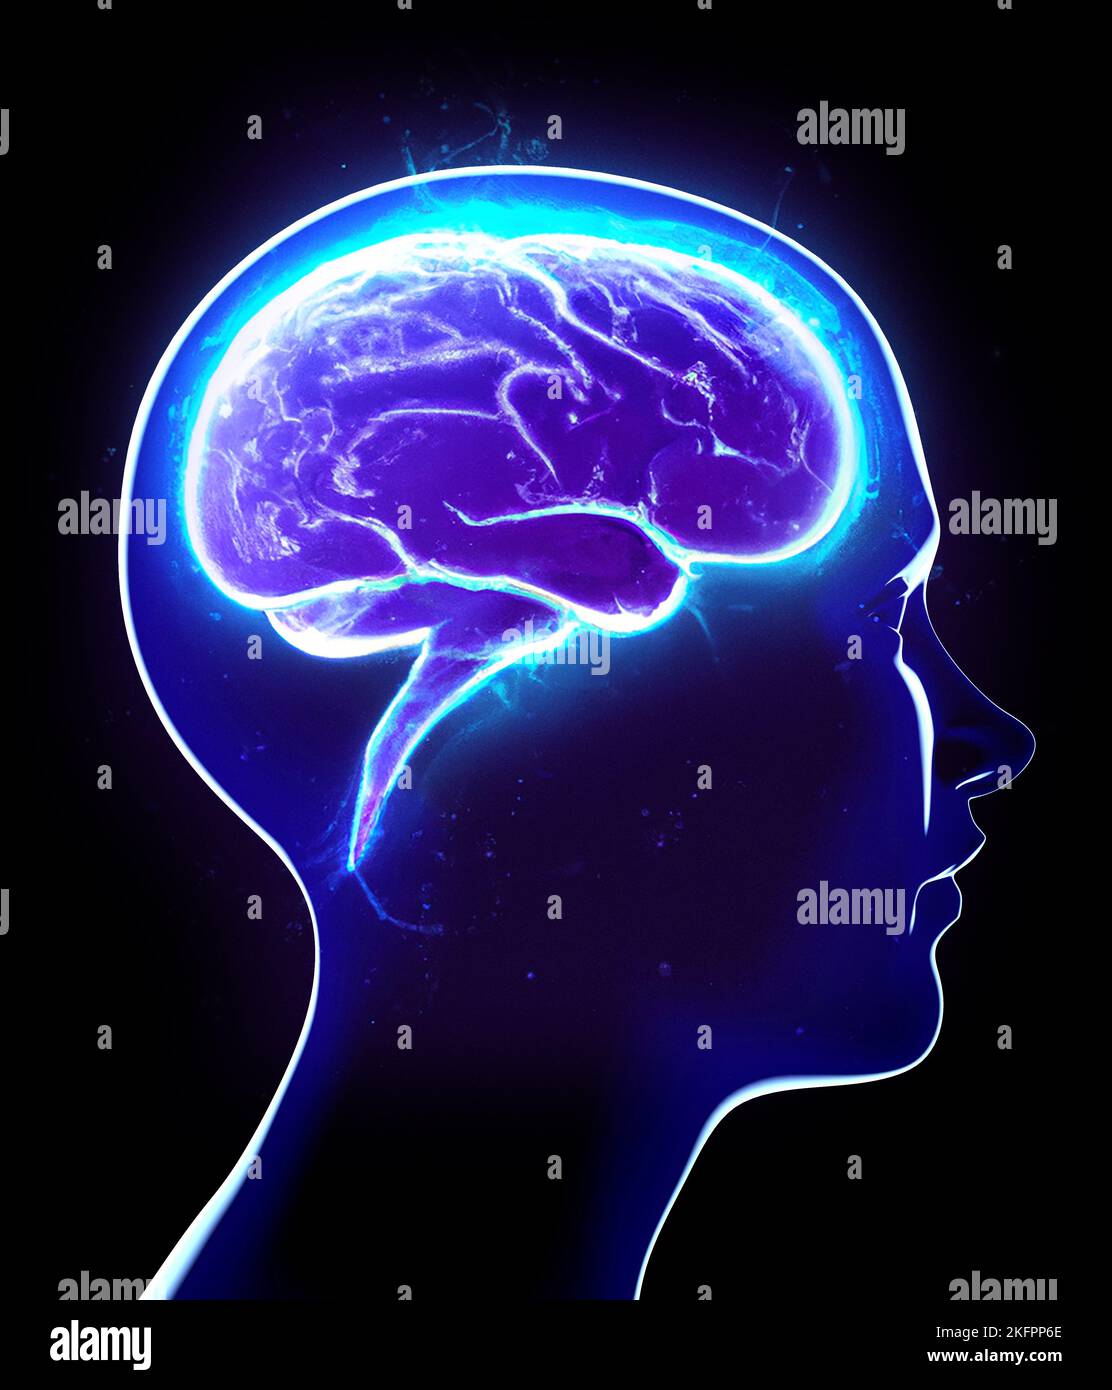 Neurologia, filosofia: Le connessioni, lo sviluppo del pensiero e della riflessione, le infinite possibilità del cervello e della mente. Faccia anatomica umana Foto Stock